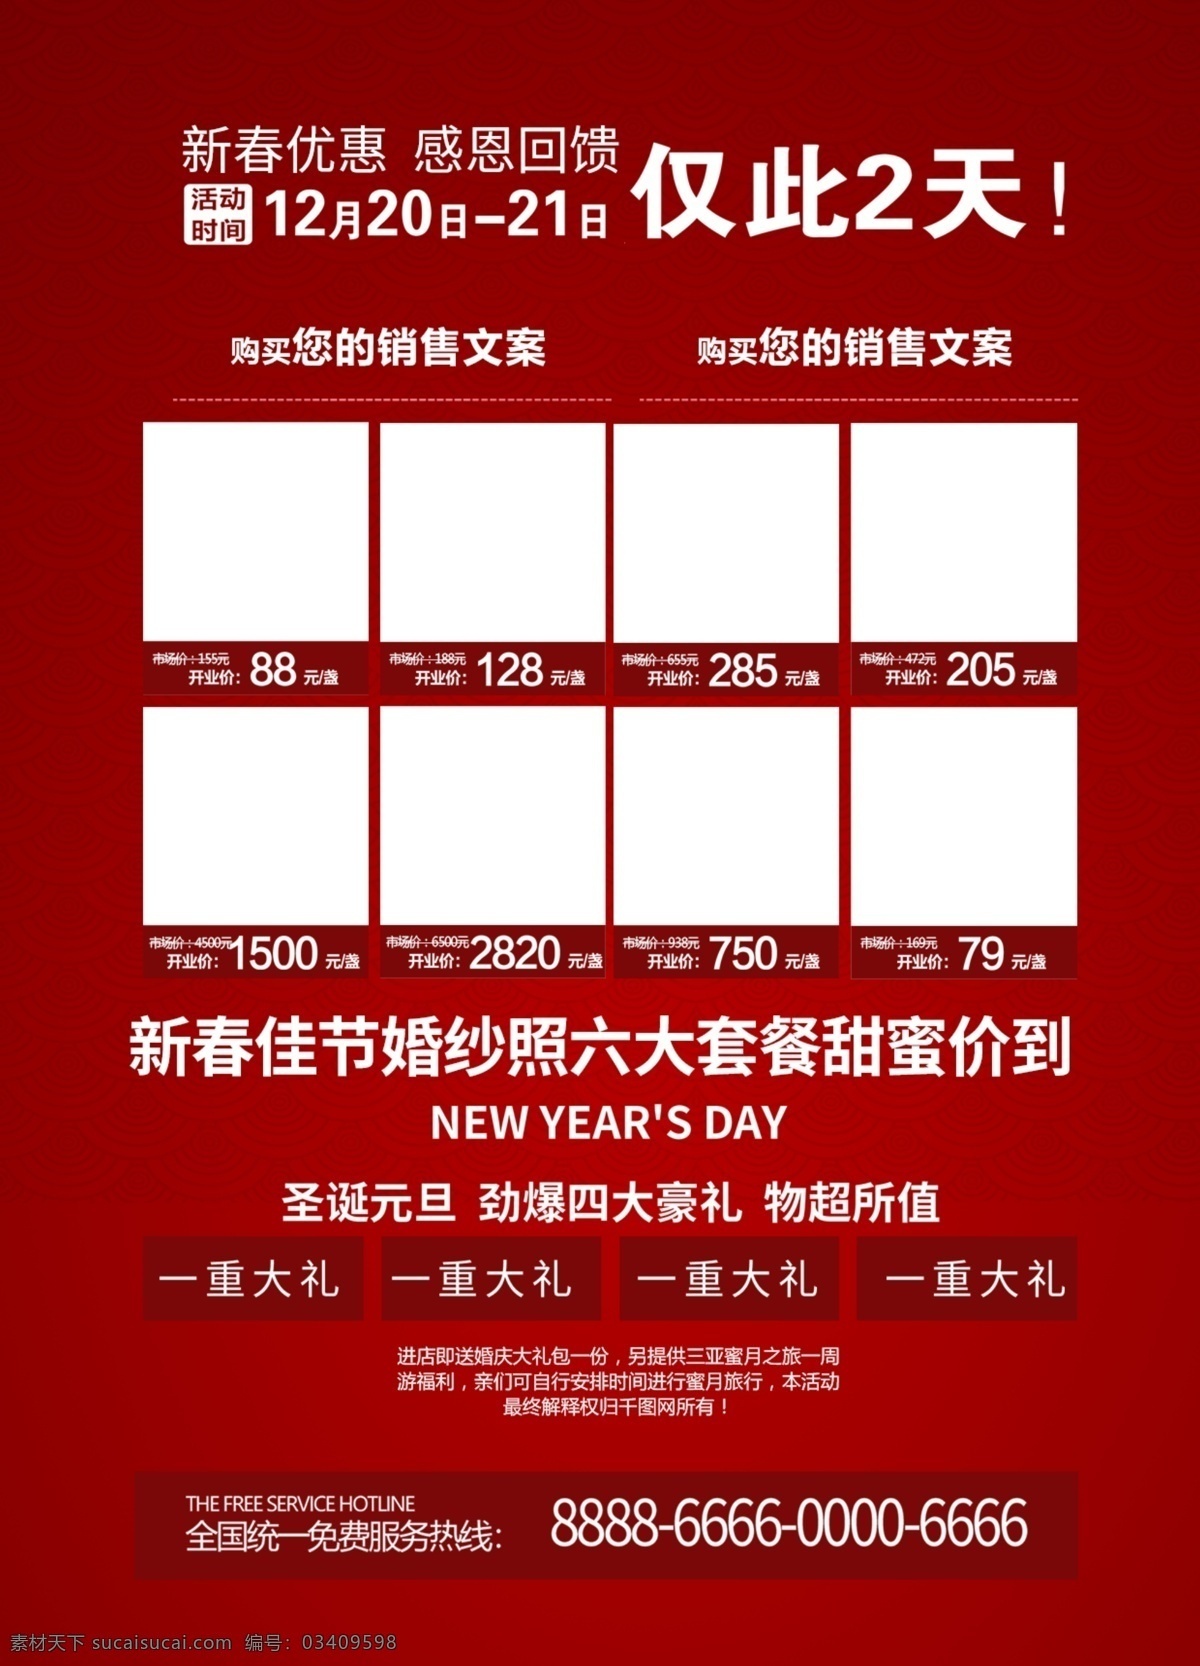 复古 红色 大气 新春 婚庆 促销 dm 单 模板 简约 中国风 蓝色 海报 背景 文字